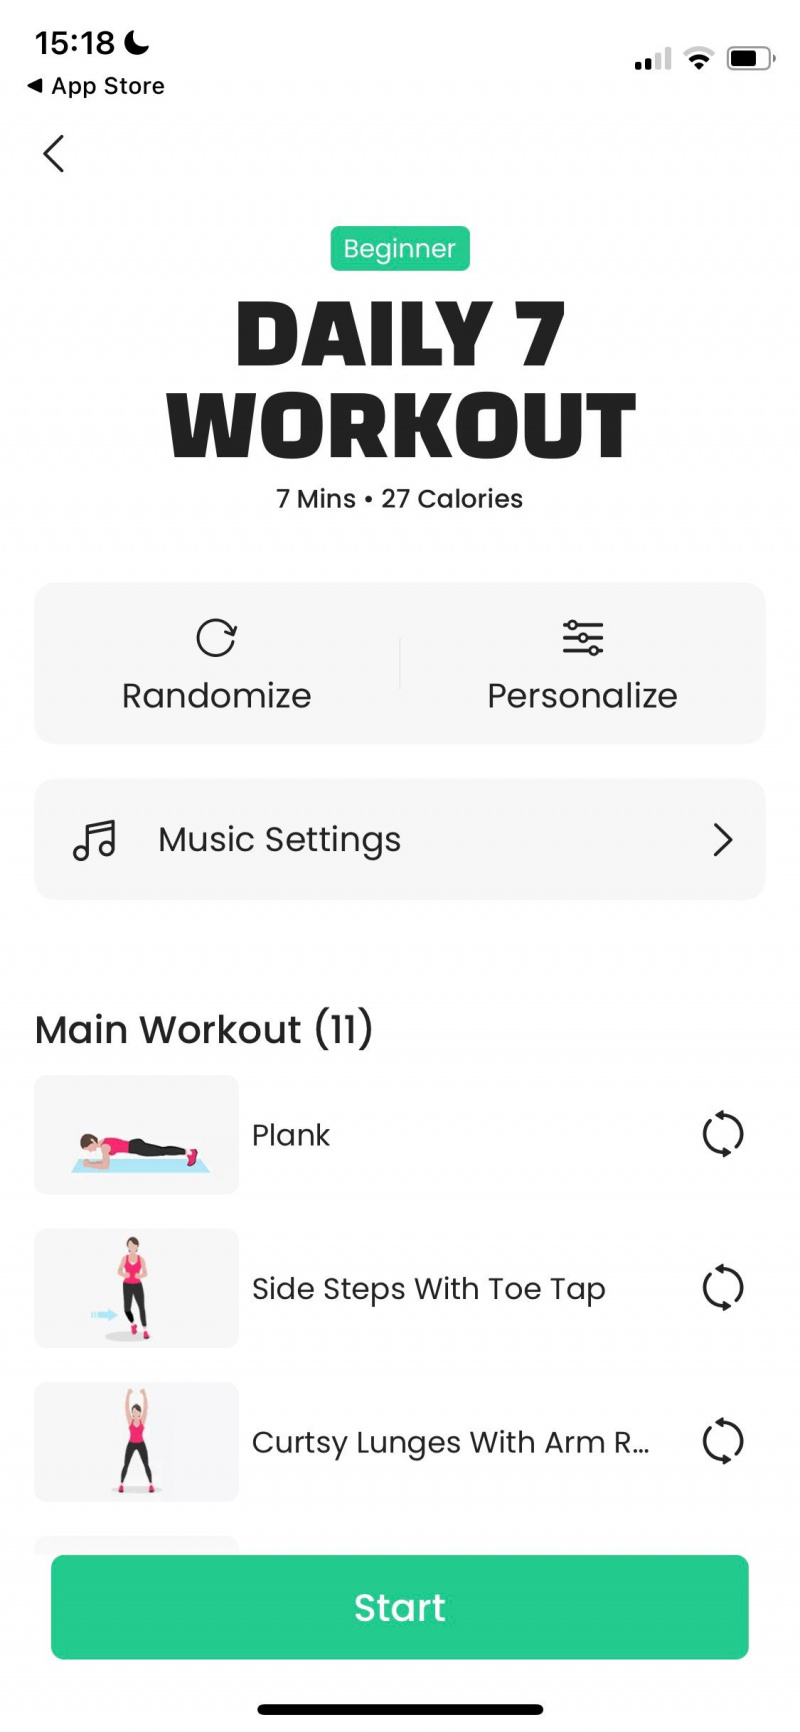   Snimka zaslona aplikacije 7M Workout koja prikazuje dnevni program vježbanja